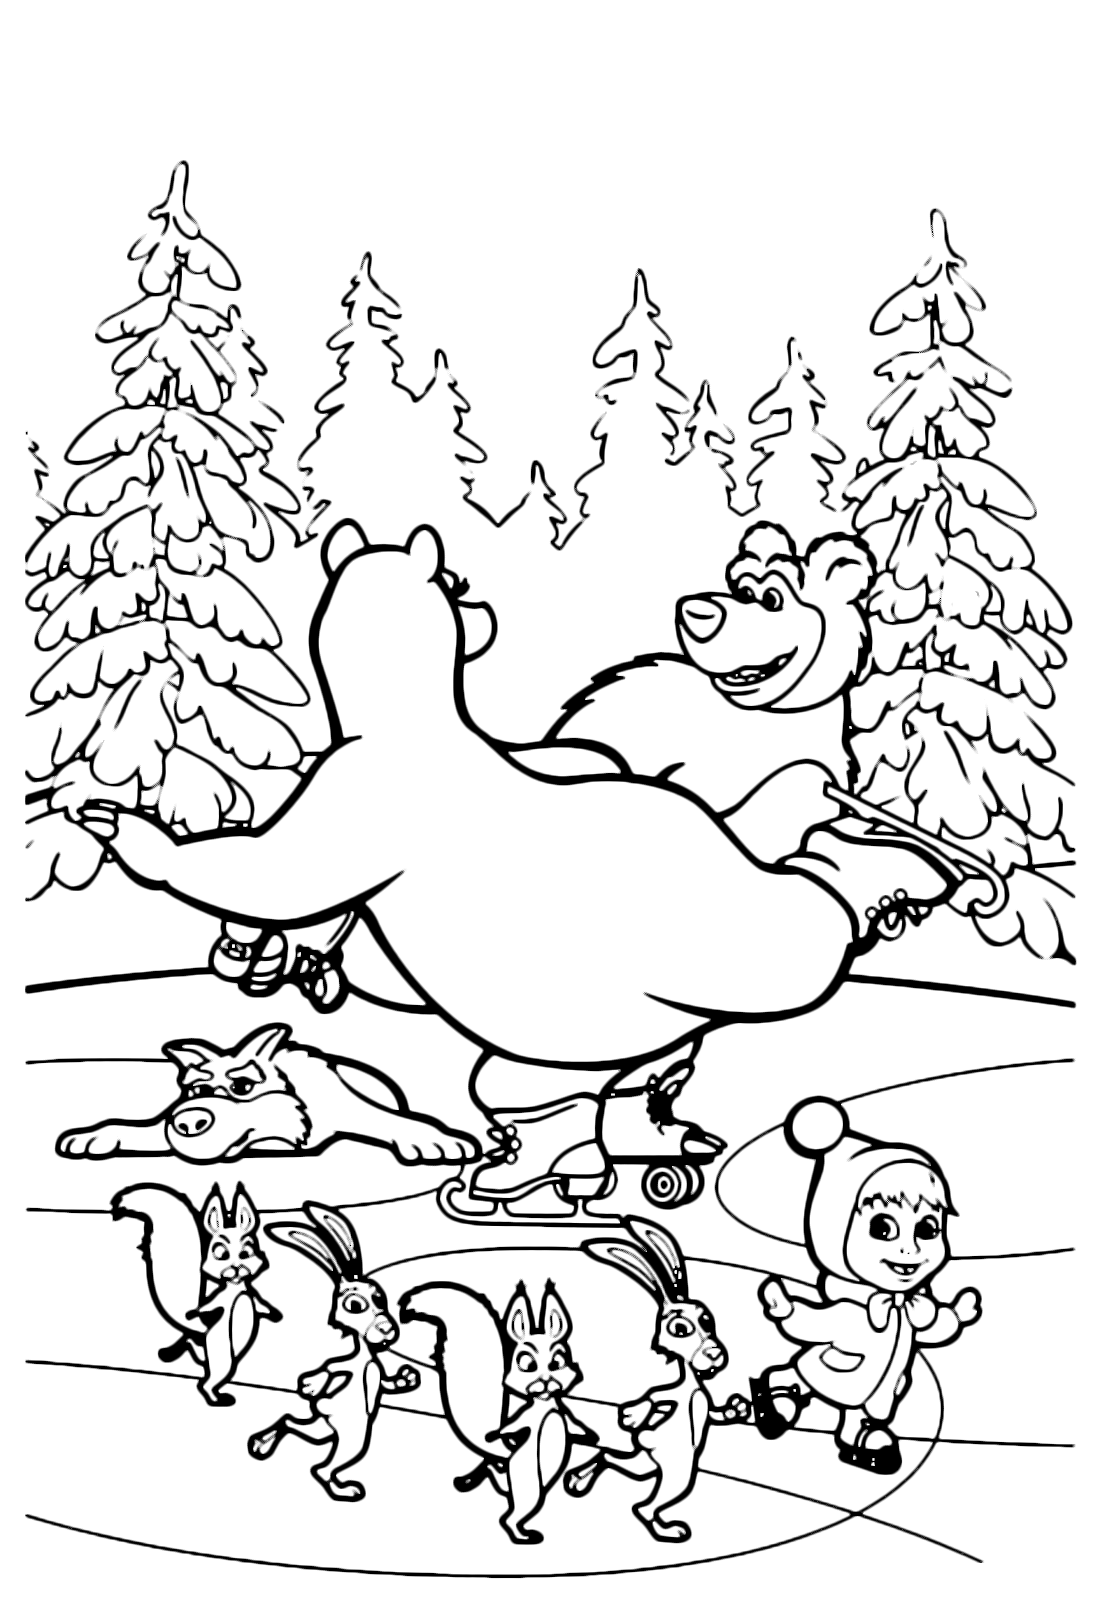 Masha e Orso - Orso balla felice sul ghiaccio assieme ad Orsa e tutti i sui amici